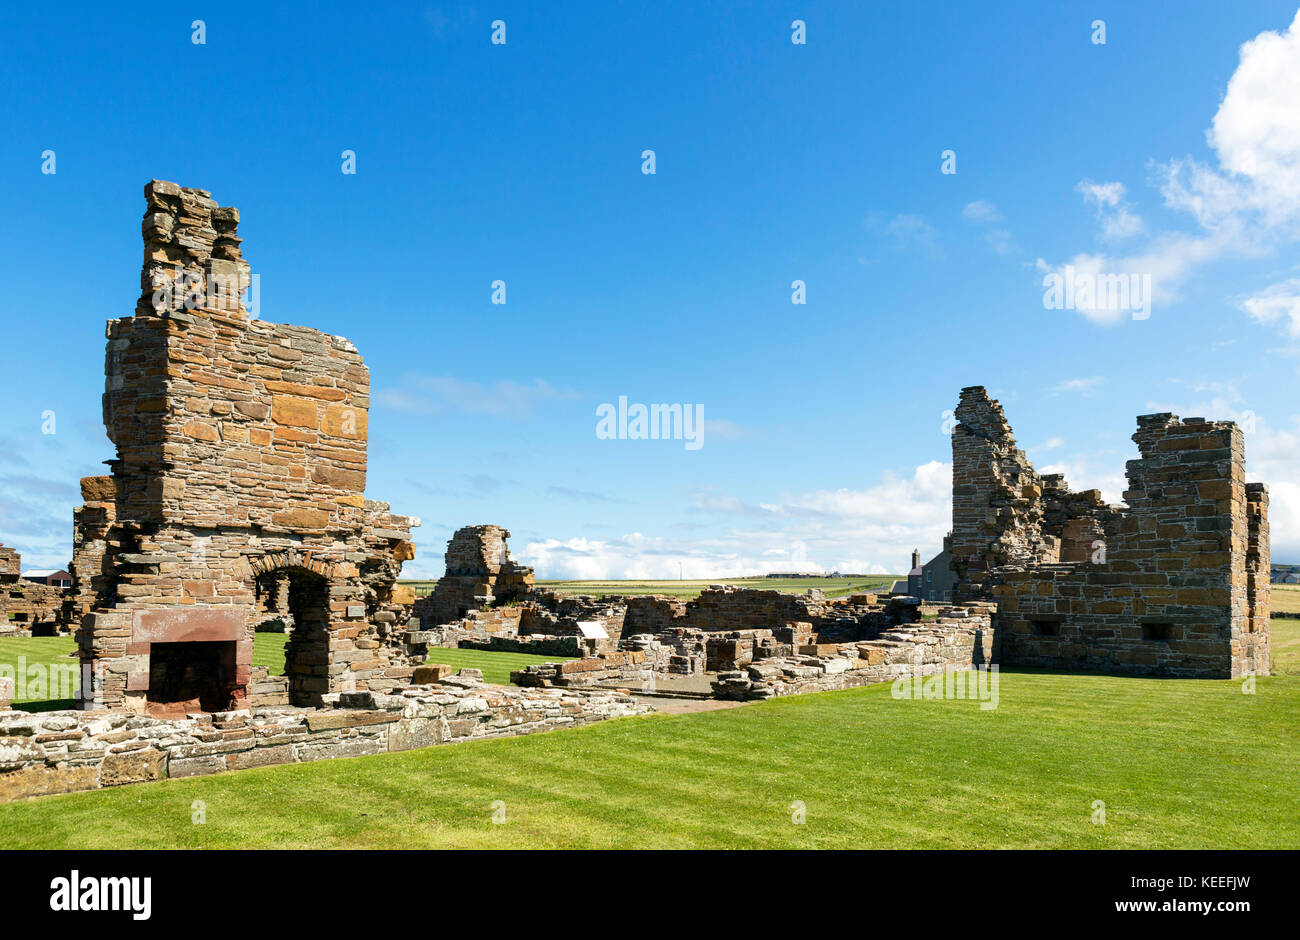 Ruines de l'Earl's Palace, un château du xvie siècle à Birsay, Orkney, continentale, Ecosse, Royaume-Uni Banque D'Images